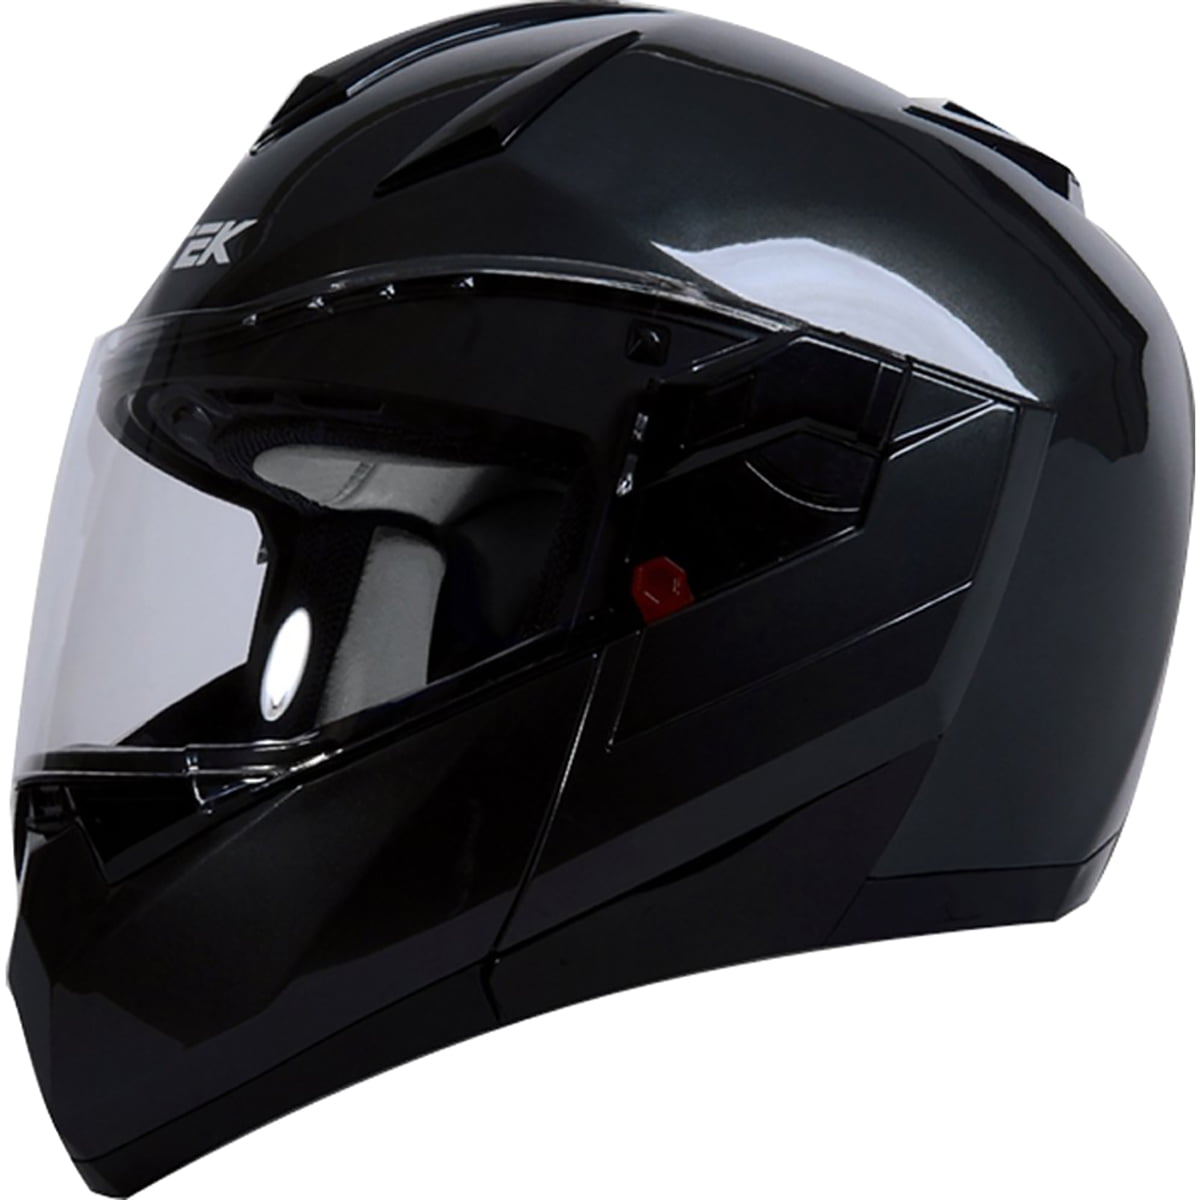 Nitek Carbon Fiber Diamond Men's Street Motorcycle Helmet - Walmart.com - Walmart.com